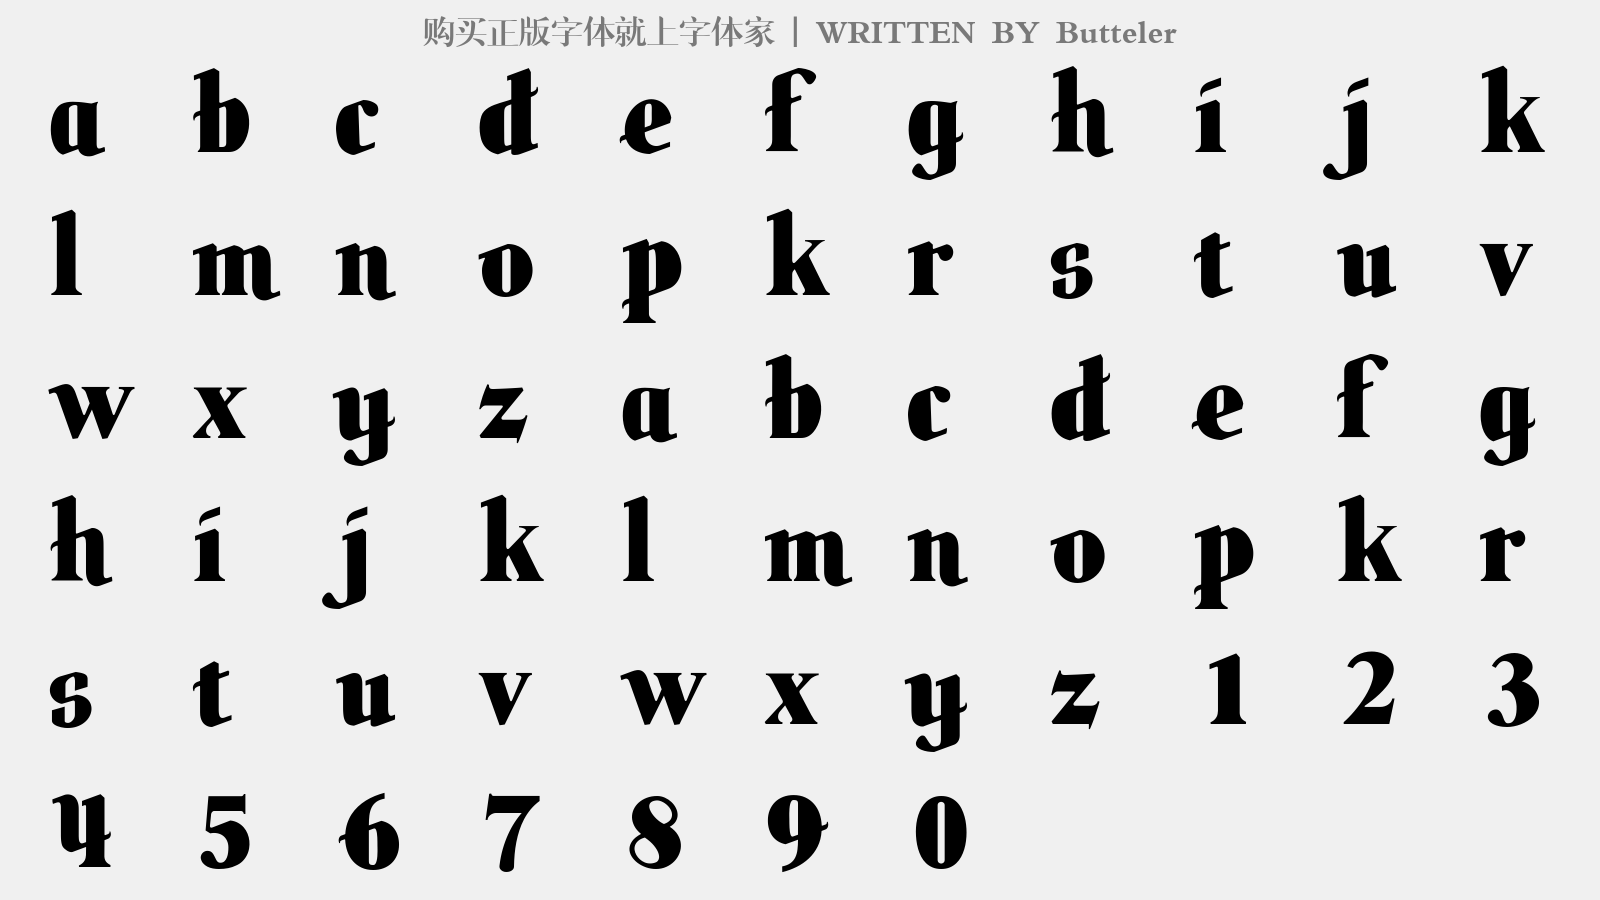 Butteler - 大写字母/小写字母/数字